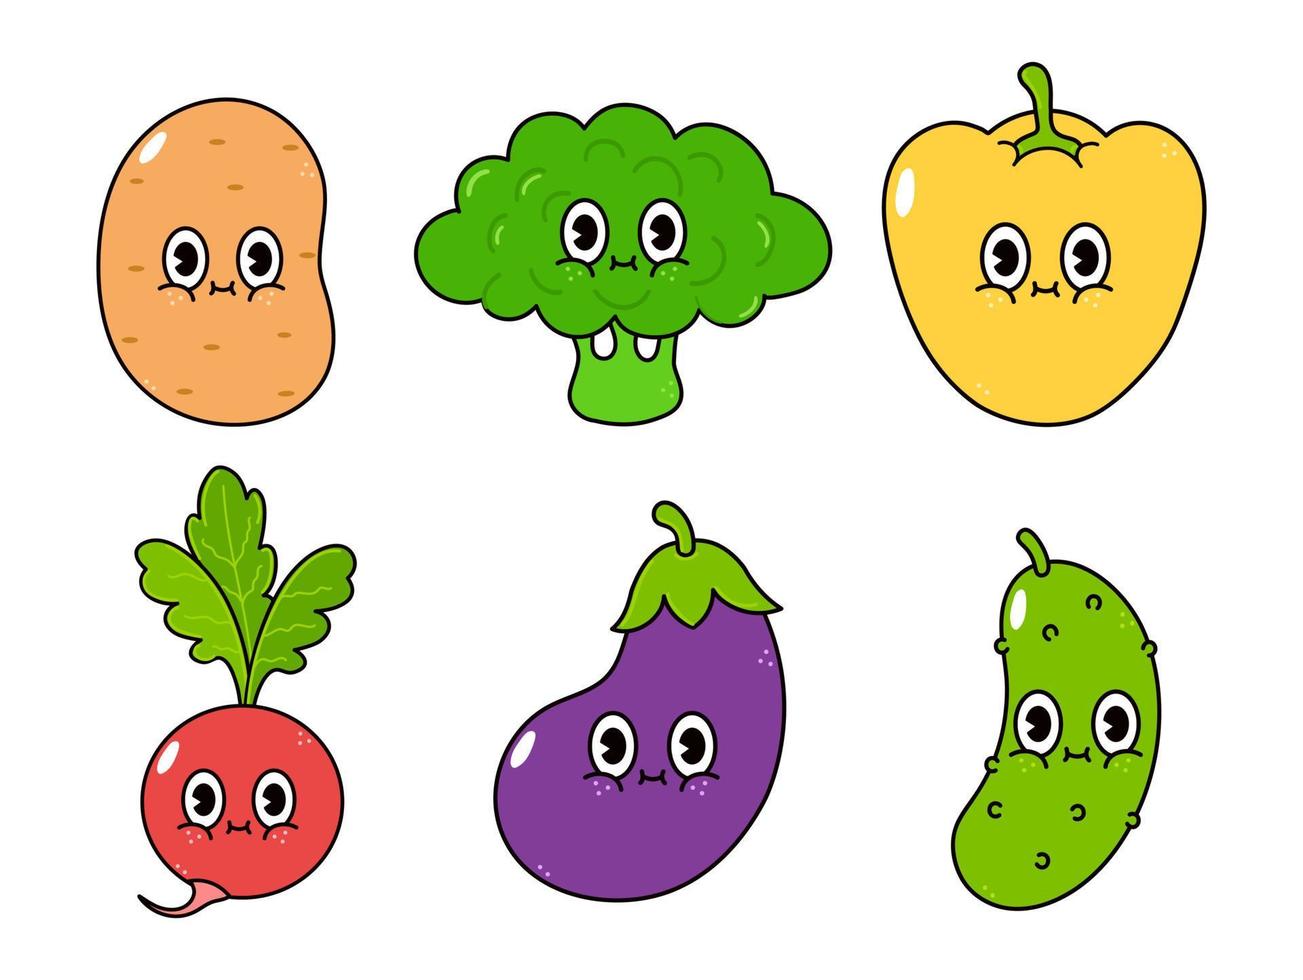 divertido lindo conjunto de personajes de vegetales felices. icono de ilustración de personaje kawaii de dibujos animados dibujados a mano vectorial. aislado sobre fondo blanco. patata linda, brócoli, berenjena, rábano, pimienta, pepino vector